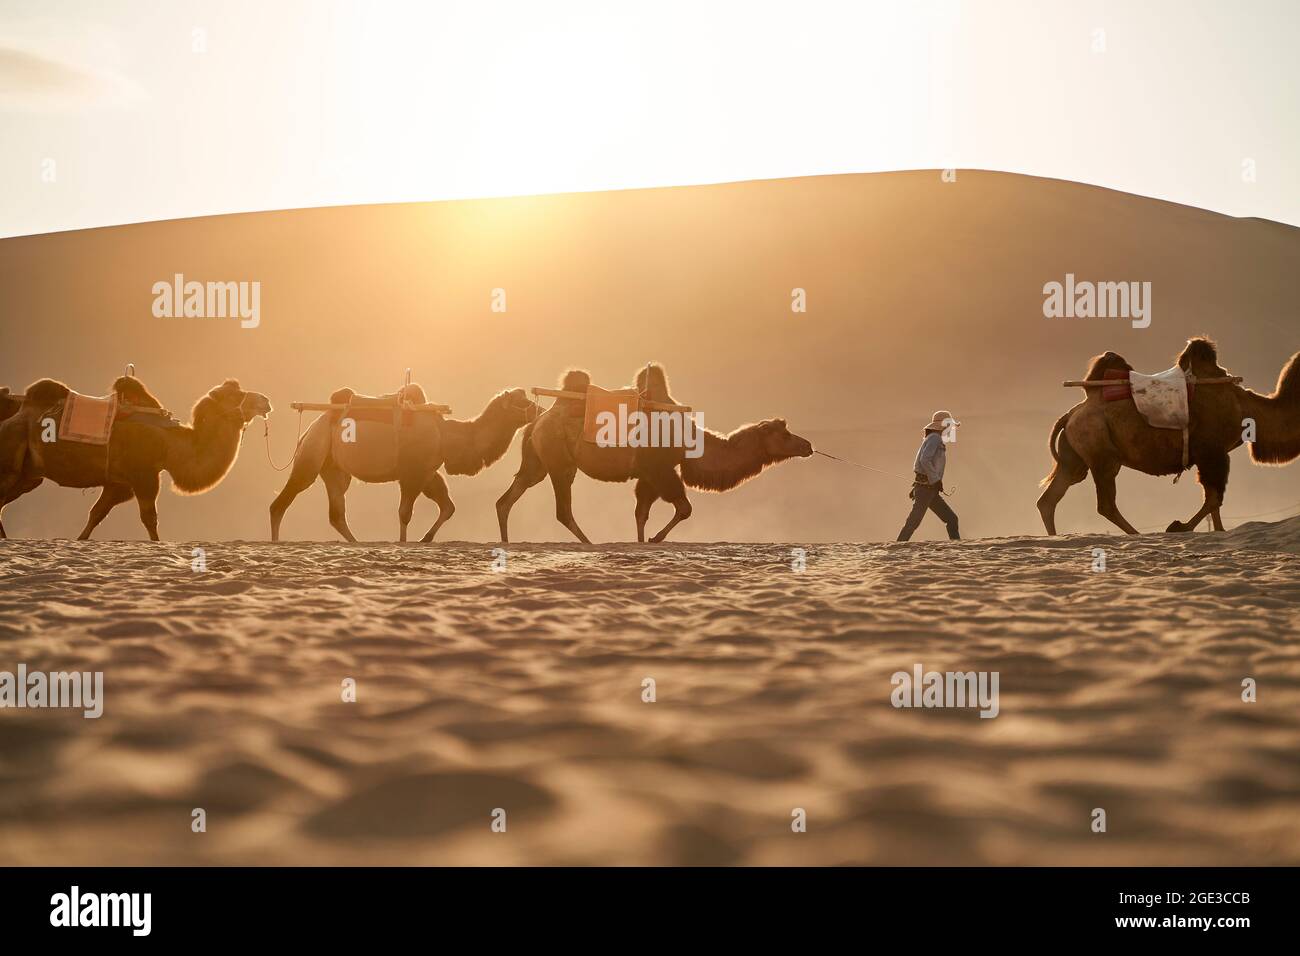 Kamelkarawane, die bei Sonnenuntergang in der Wüste mit einer riesigen Sanddüne im Hintergrund spazieren gehen Stockfoto